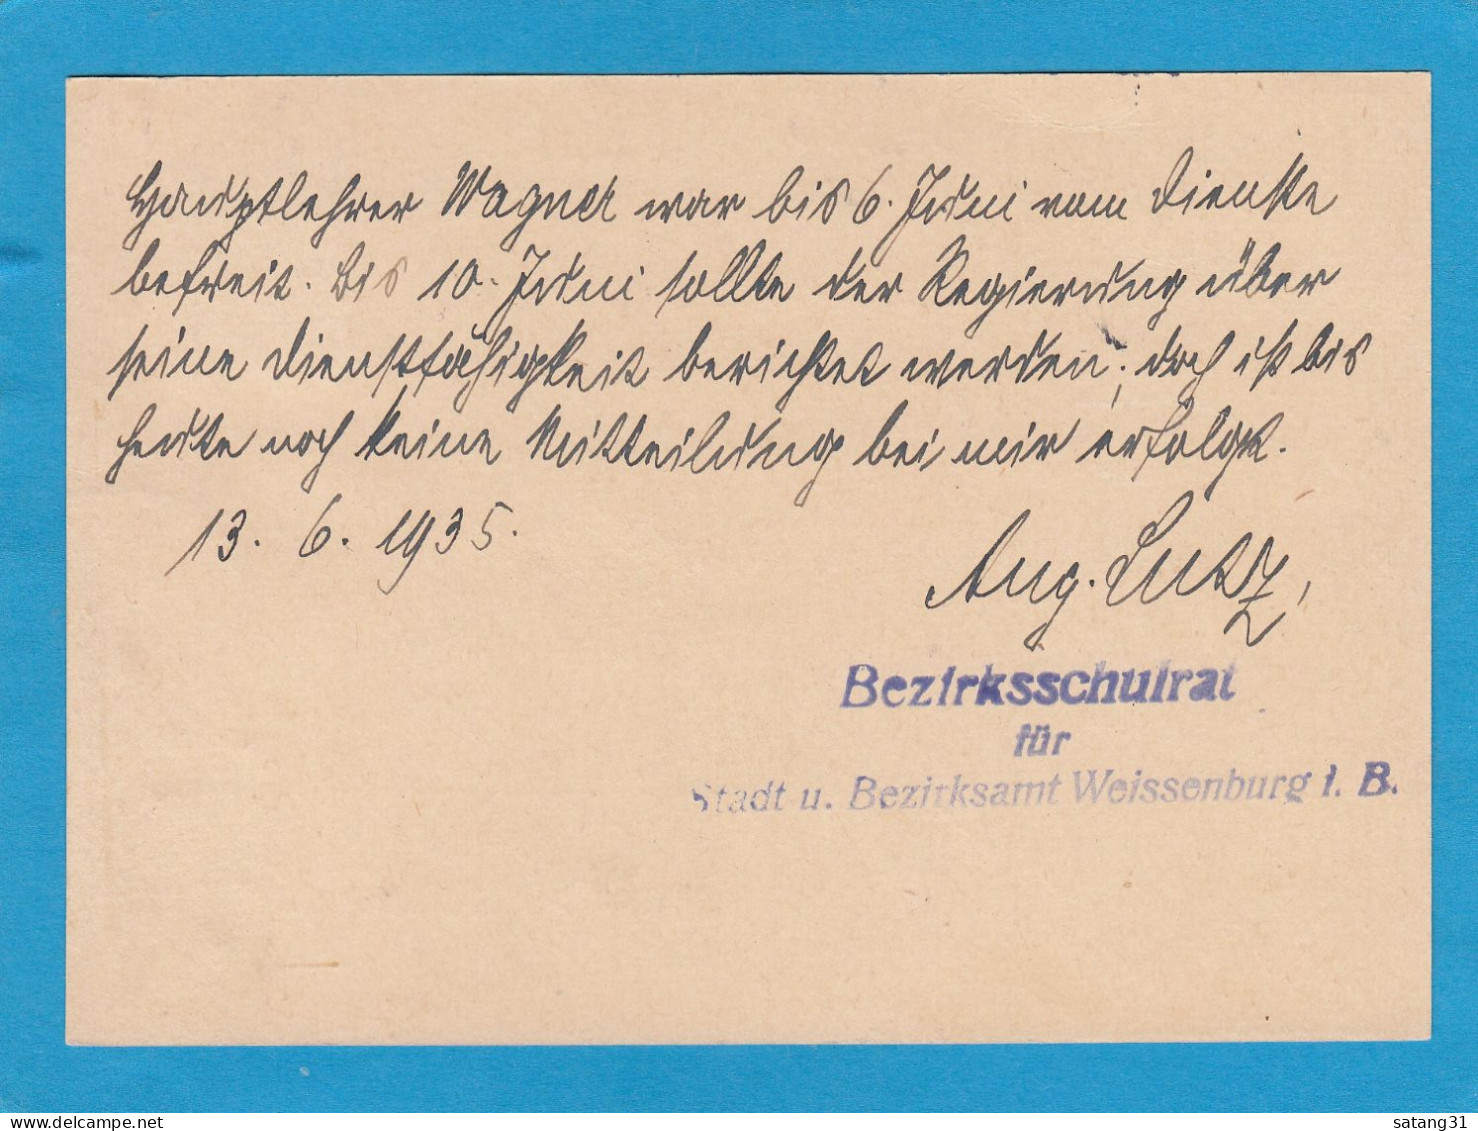 POSTKARTE VOM BEZIRKSSCHULRAT AUS WEISSENBURG NACH TREUCHTLINGEN,1935. - Service